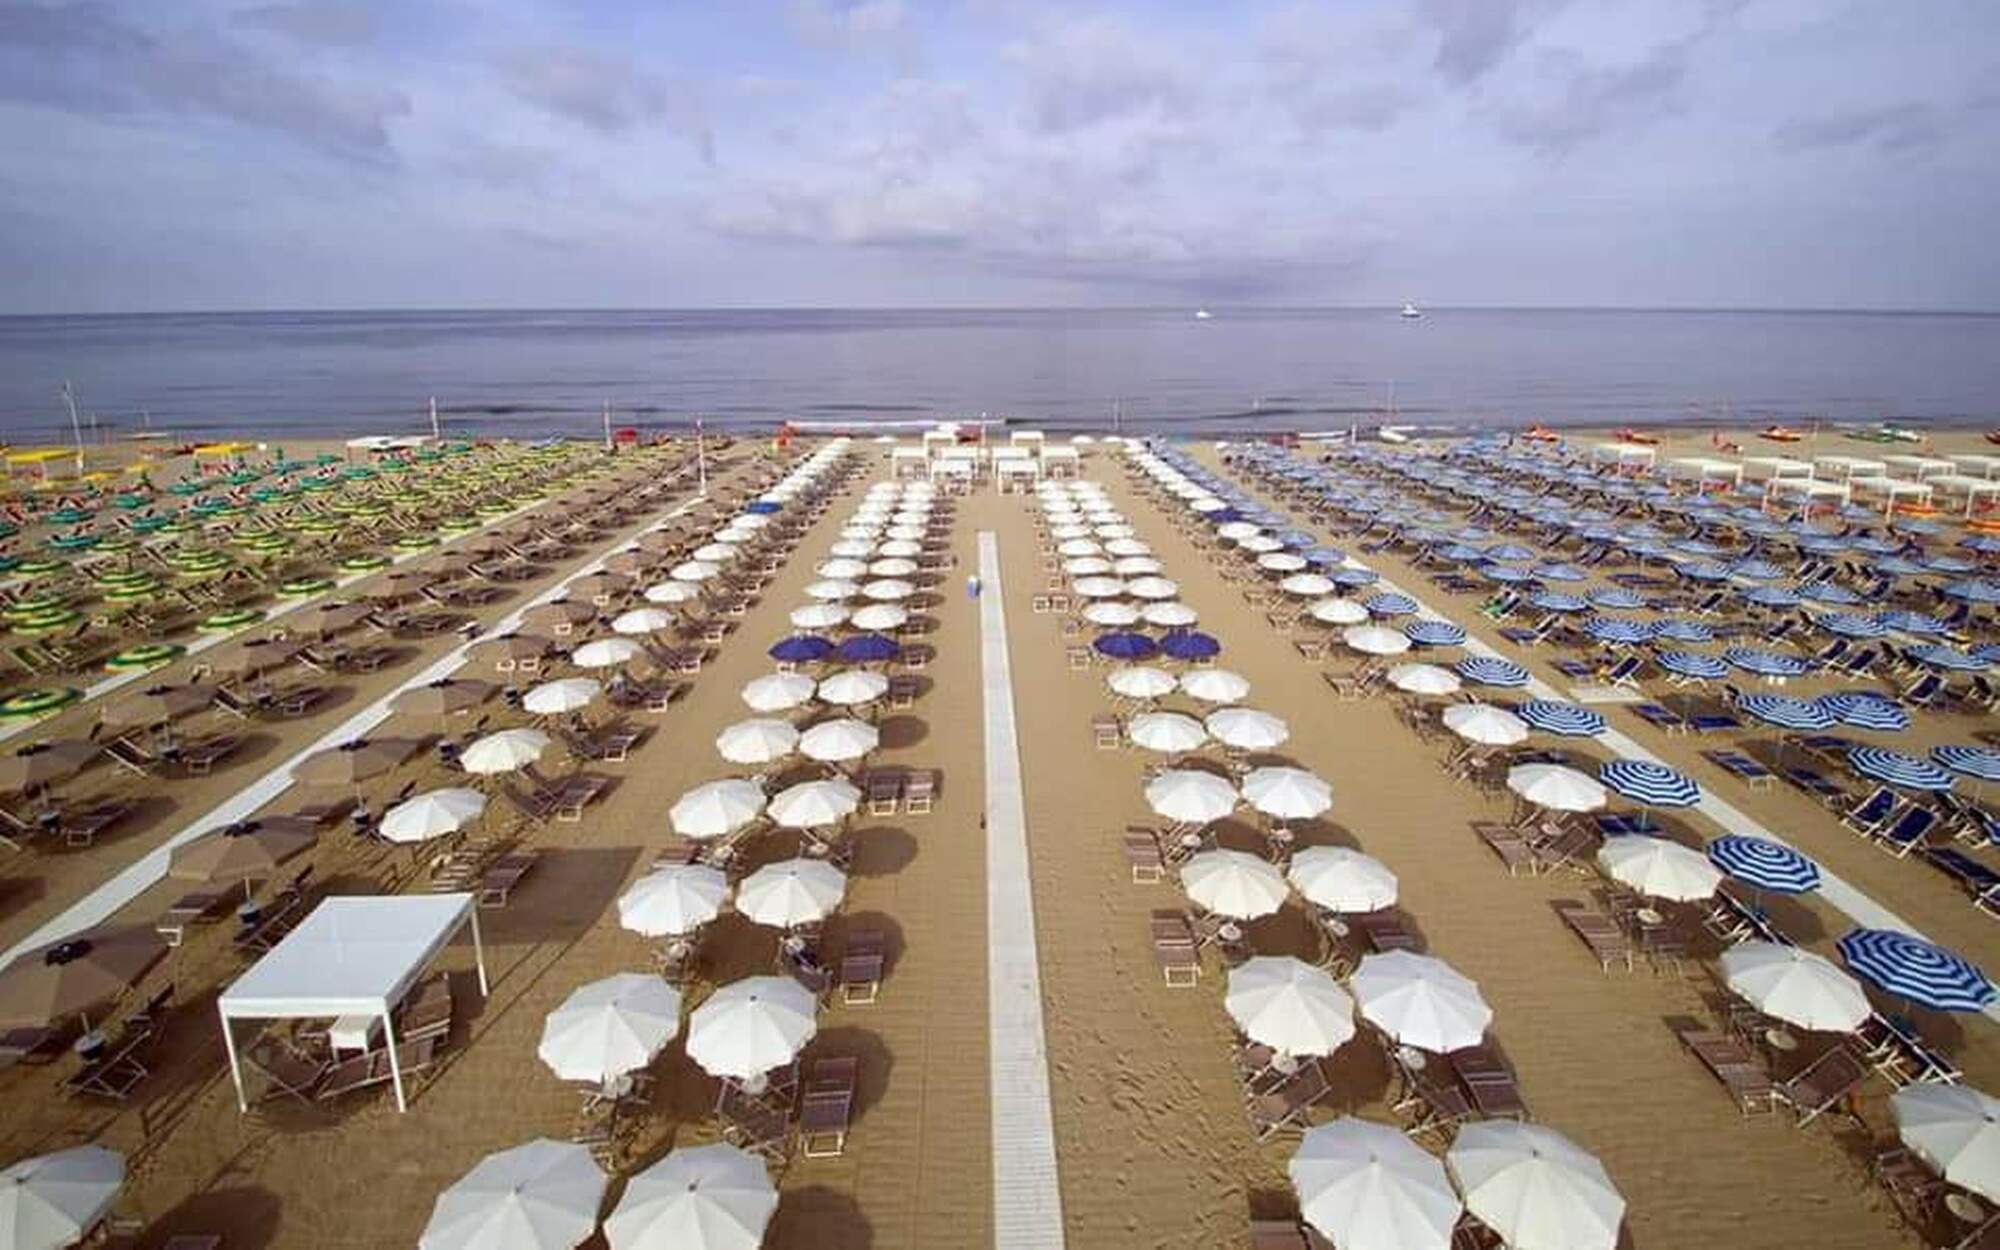 hoteltahiti en viareggio-sea-hotel-tahiti-our-affiliated-beaches-on-the-tuscany-sea 005